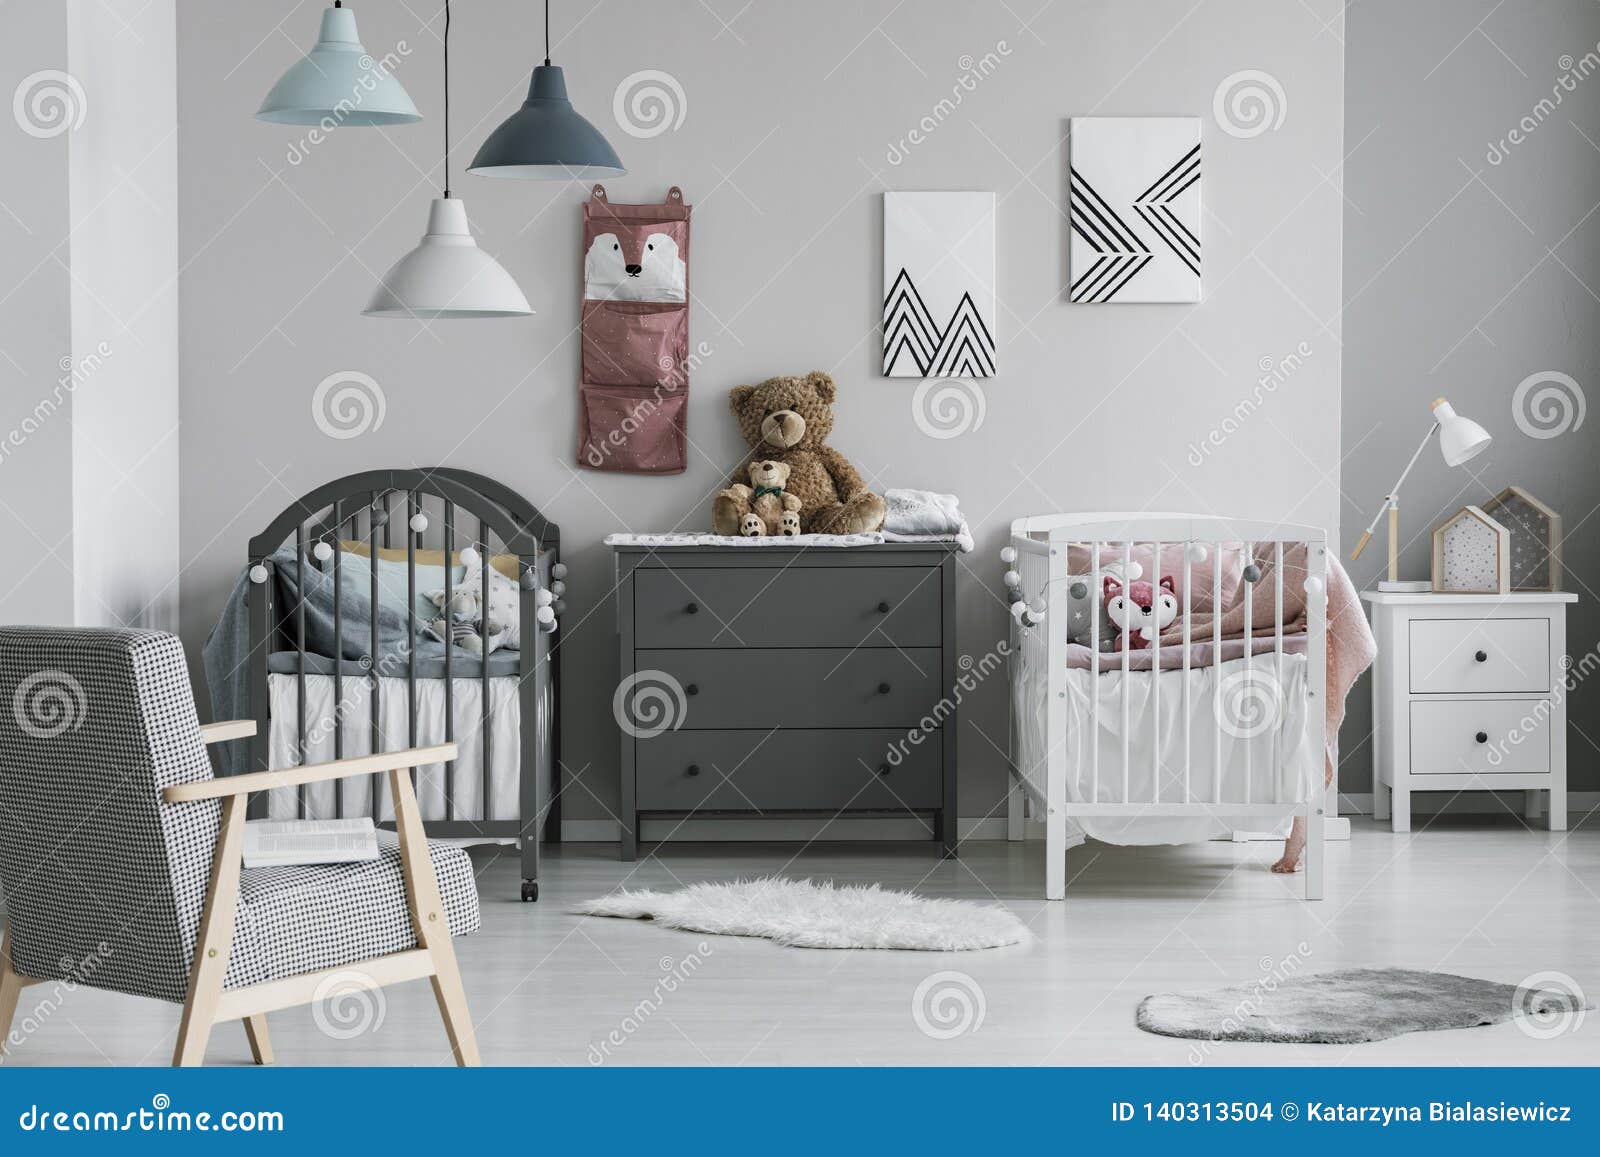 Organizador En La Pared Del Dormitorio De Moda Del Bebé Con Dos Pesebres Pechos De Foto de archivo - Imagen de dormitorio, cabrito: 140313504